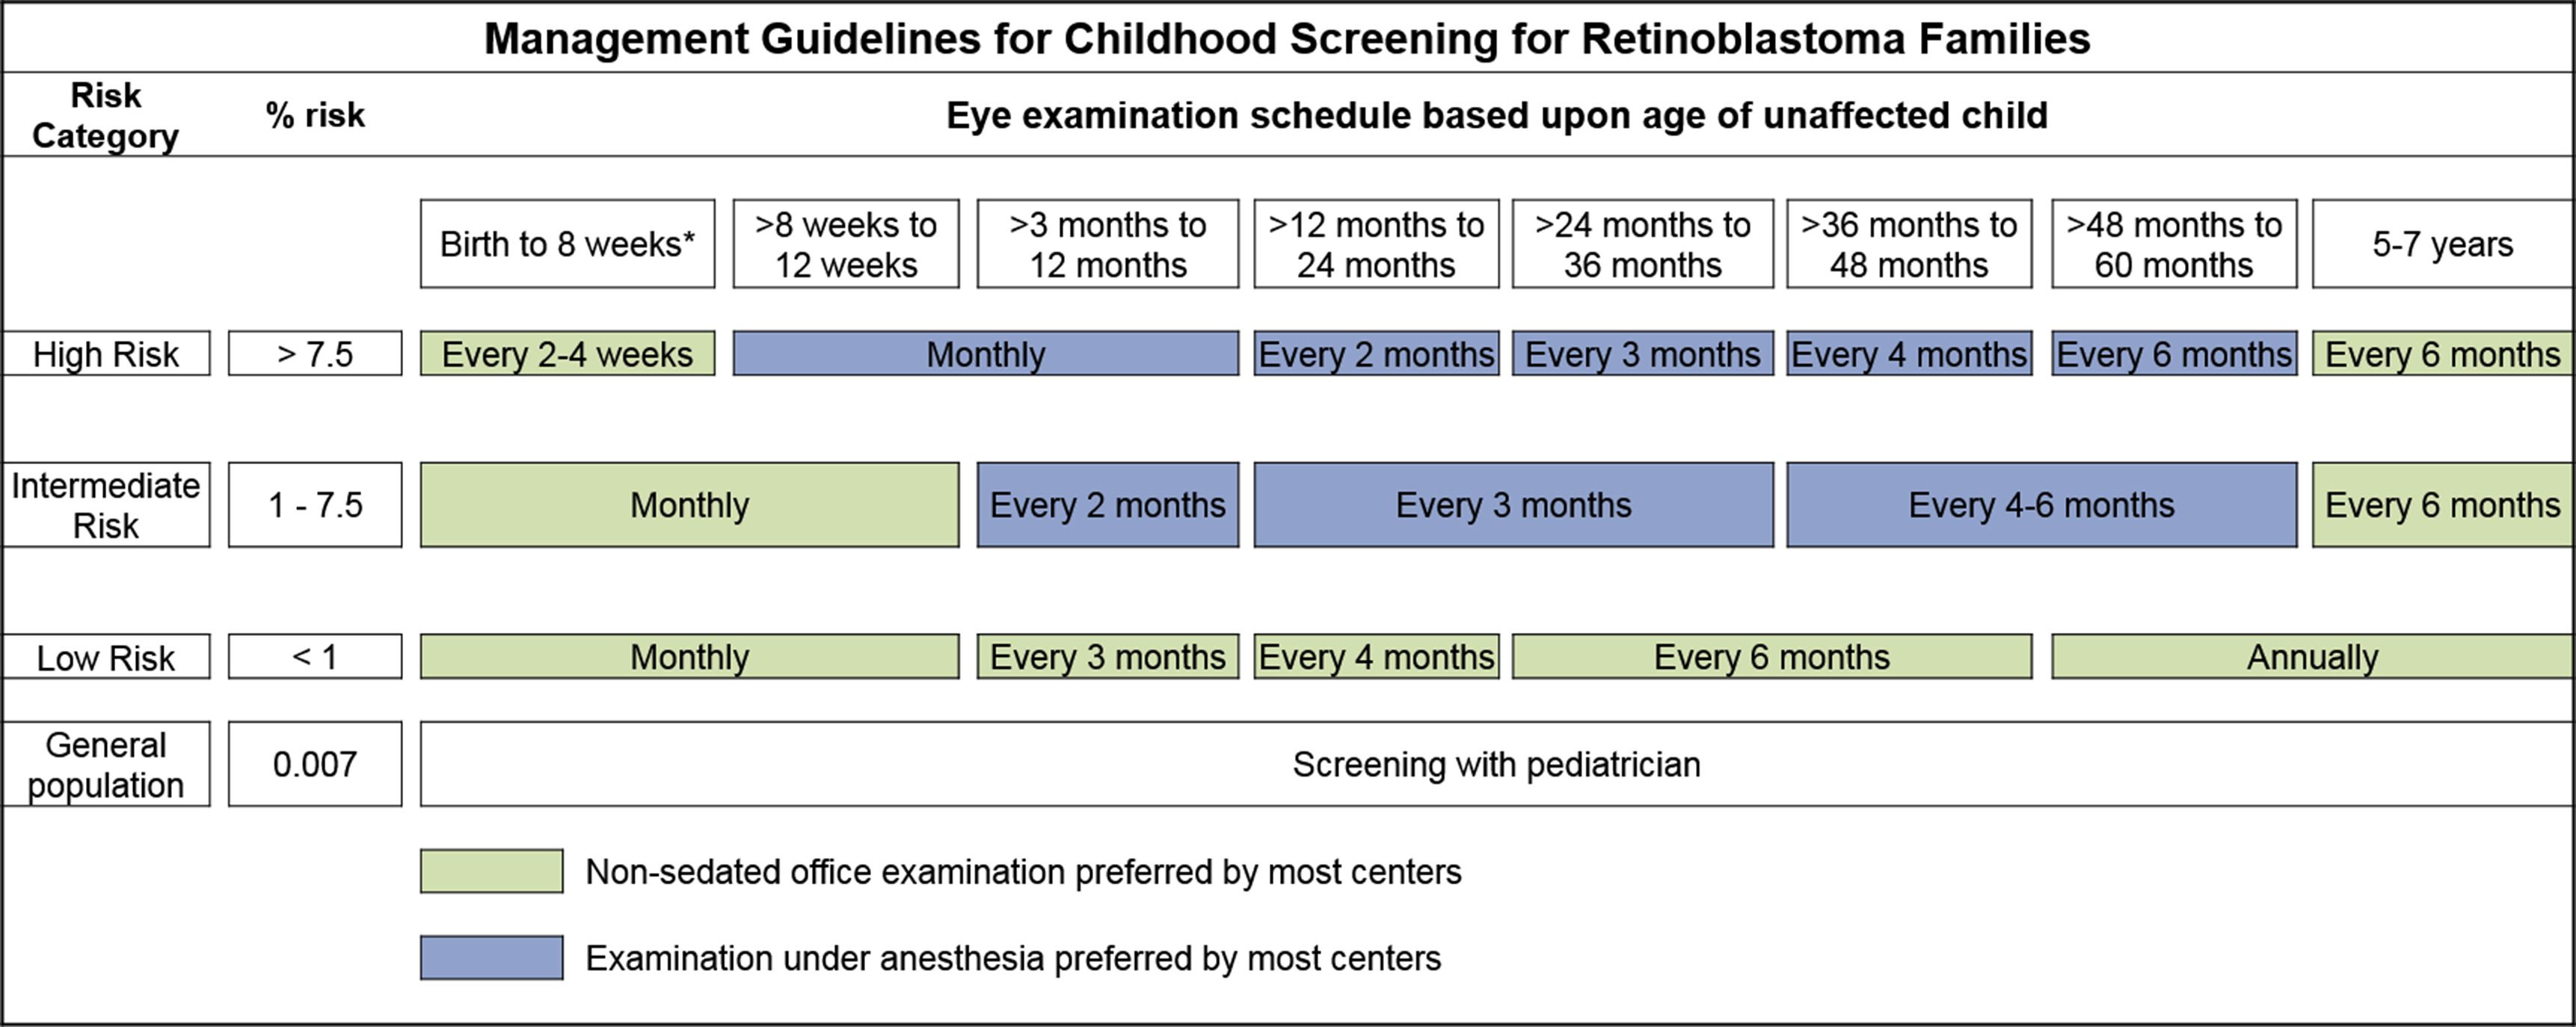 網膜芽細胞腫に対する小児期のスクリーニングのための管理ガイドラインを示す表。